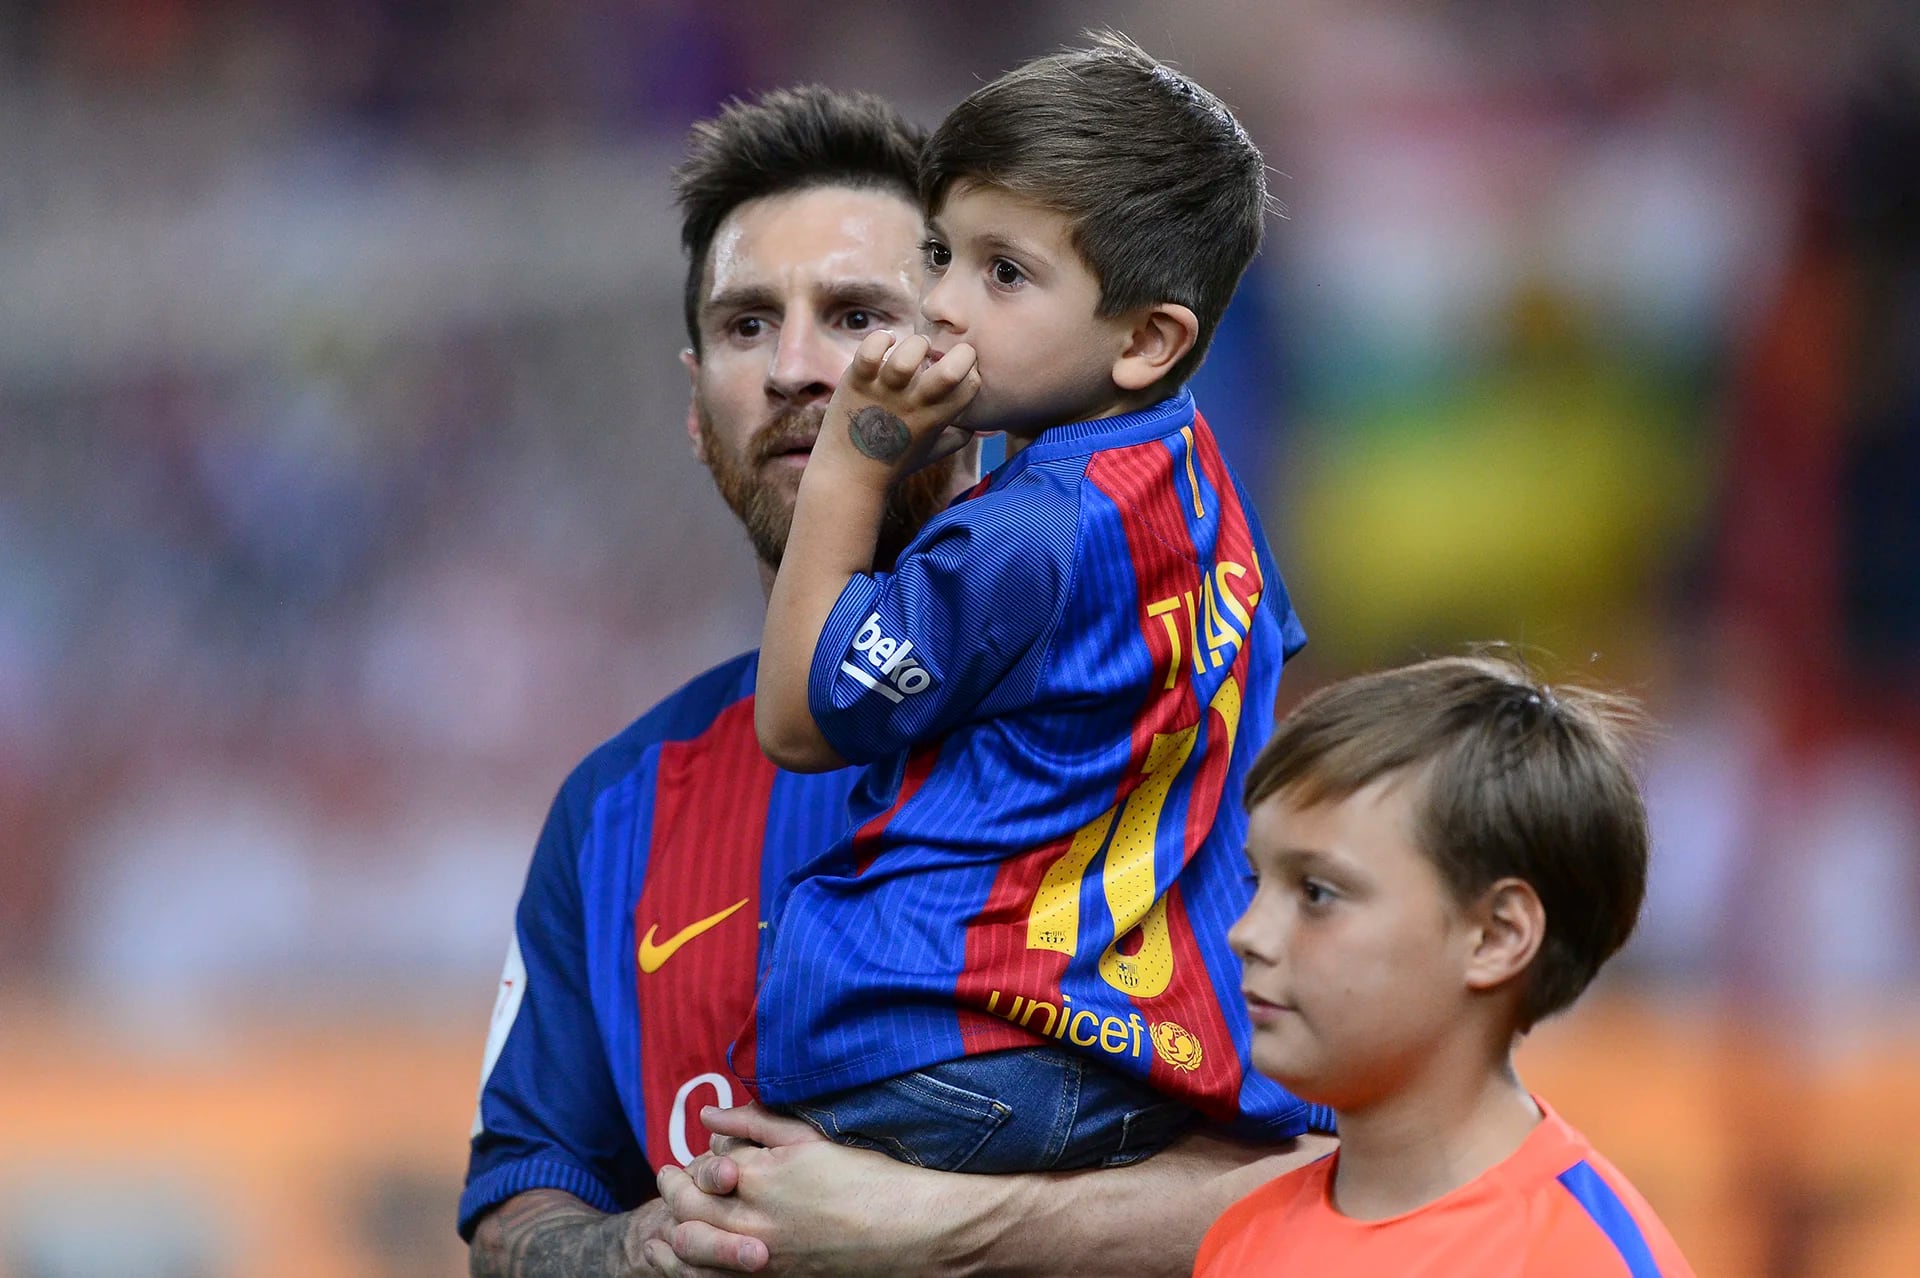 ¿Qué miran Lionel y Thiago Messi? Buscan a Antonella y Mateo, que se acercan para saludar al genio del fútbol que acaba de ganar un nuevo título con el Barcelona